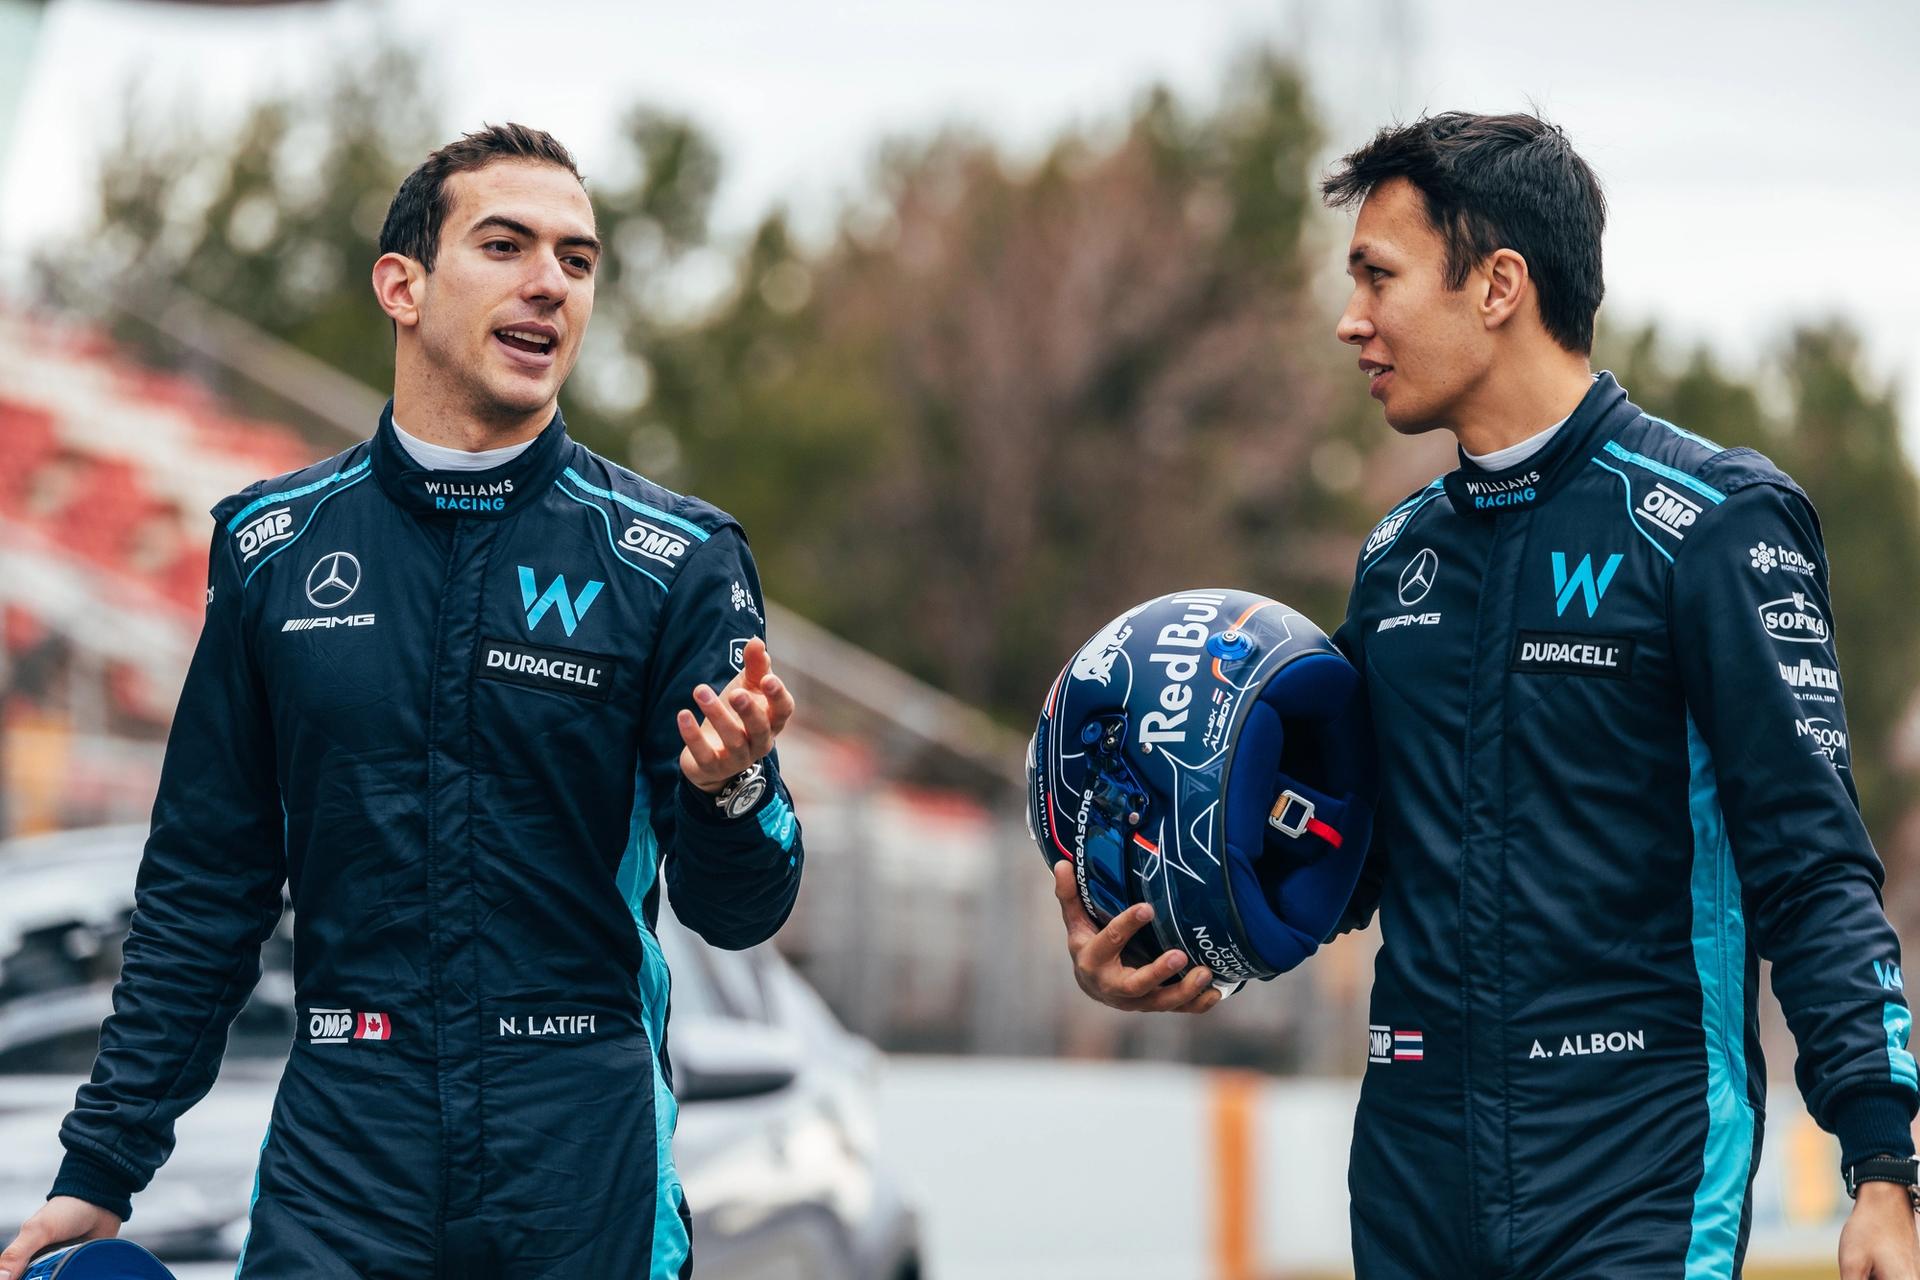 Nicholas Latifi ve Alex Albon - 2022 Williams Racing sürücüleri